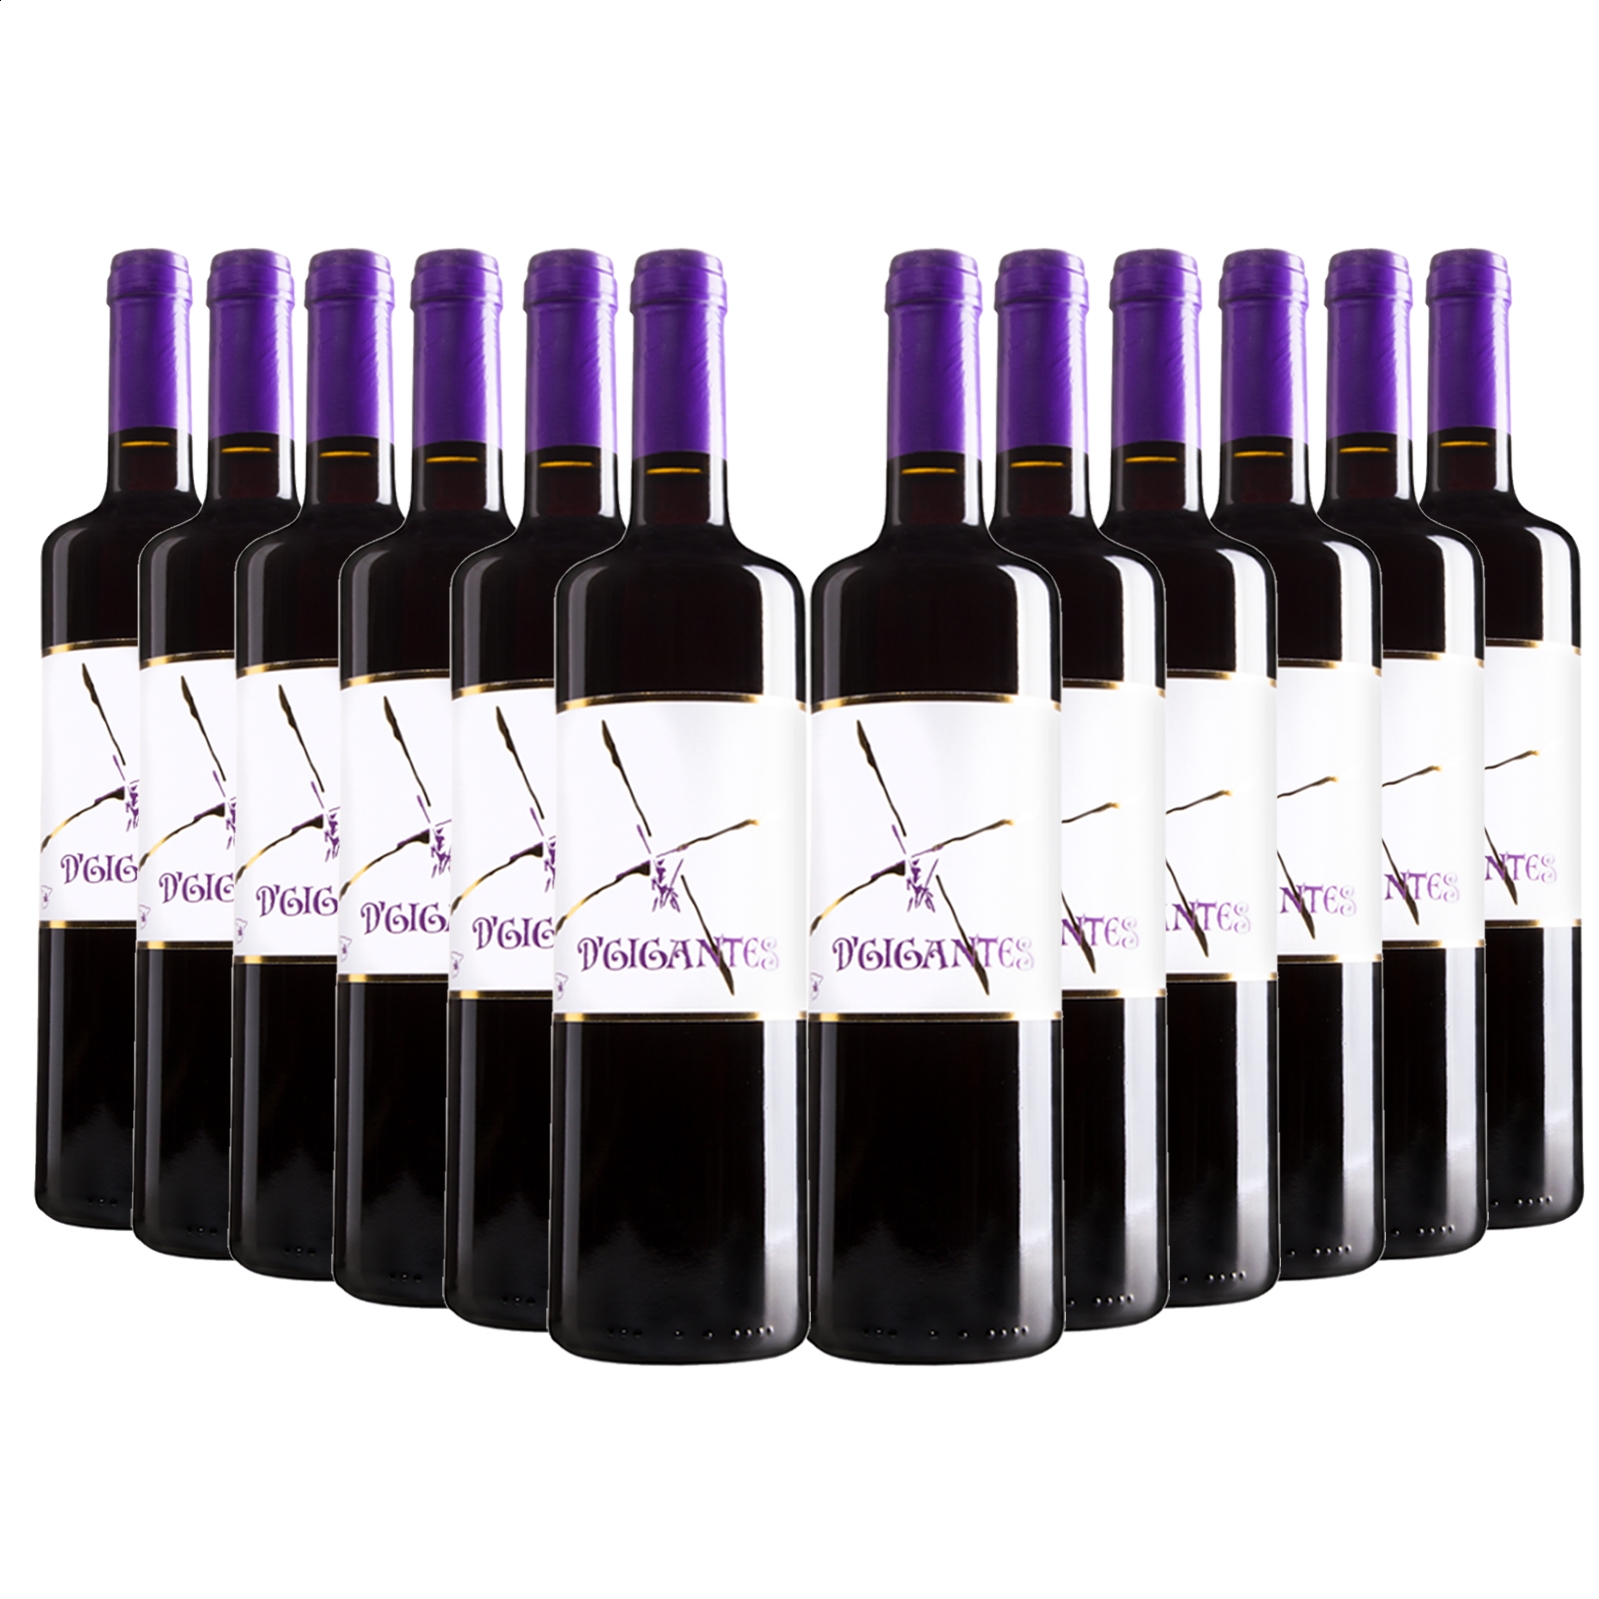 Vinícola del Carmen - D'Gigantes vino tinto Syrah IGP Vino de la Tierra de Castilla 75cl, 12uds